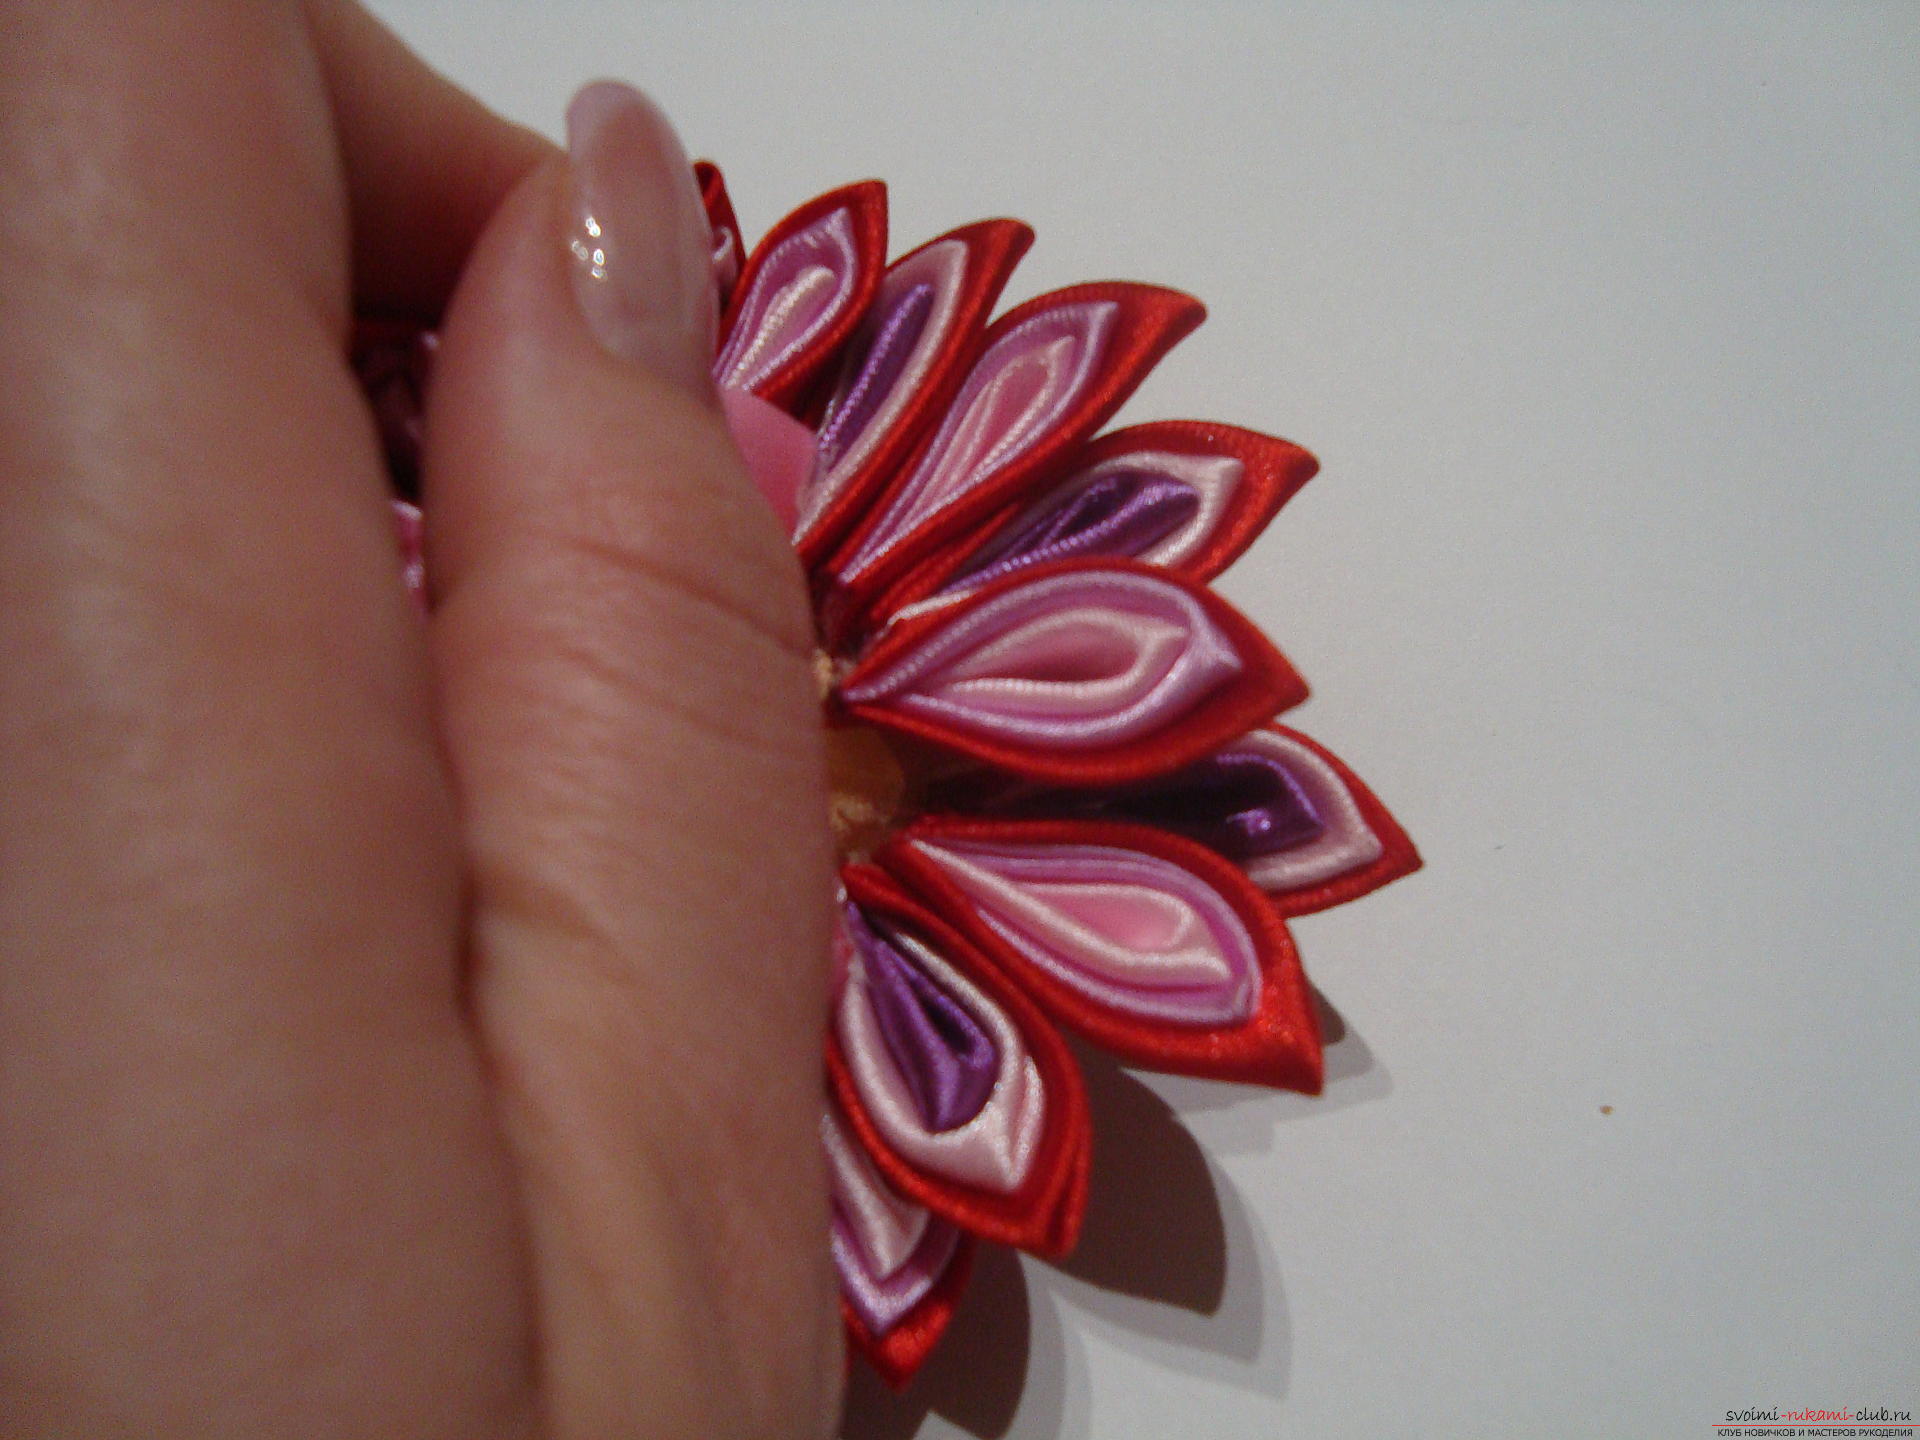 Подробное руководство с фото по изготовлению заколки в форме цветка с разноцветными лепестками в технике канзаши. Фото №10